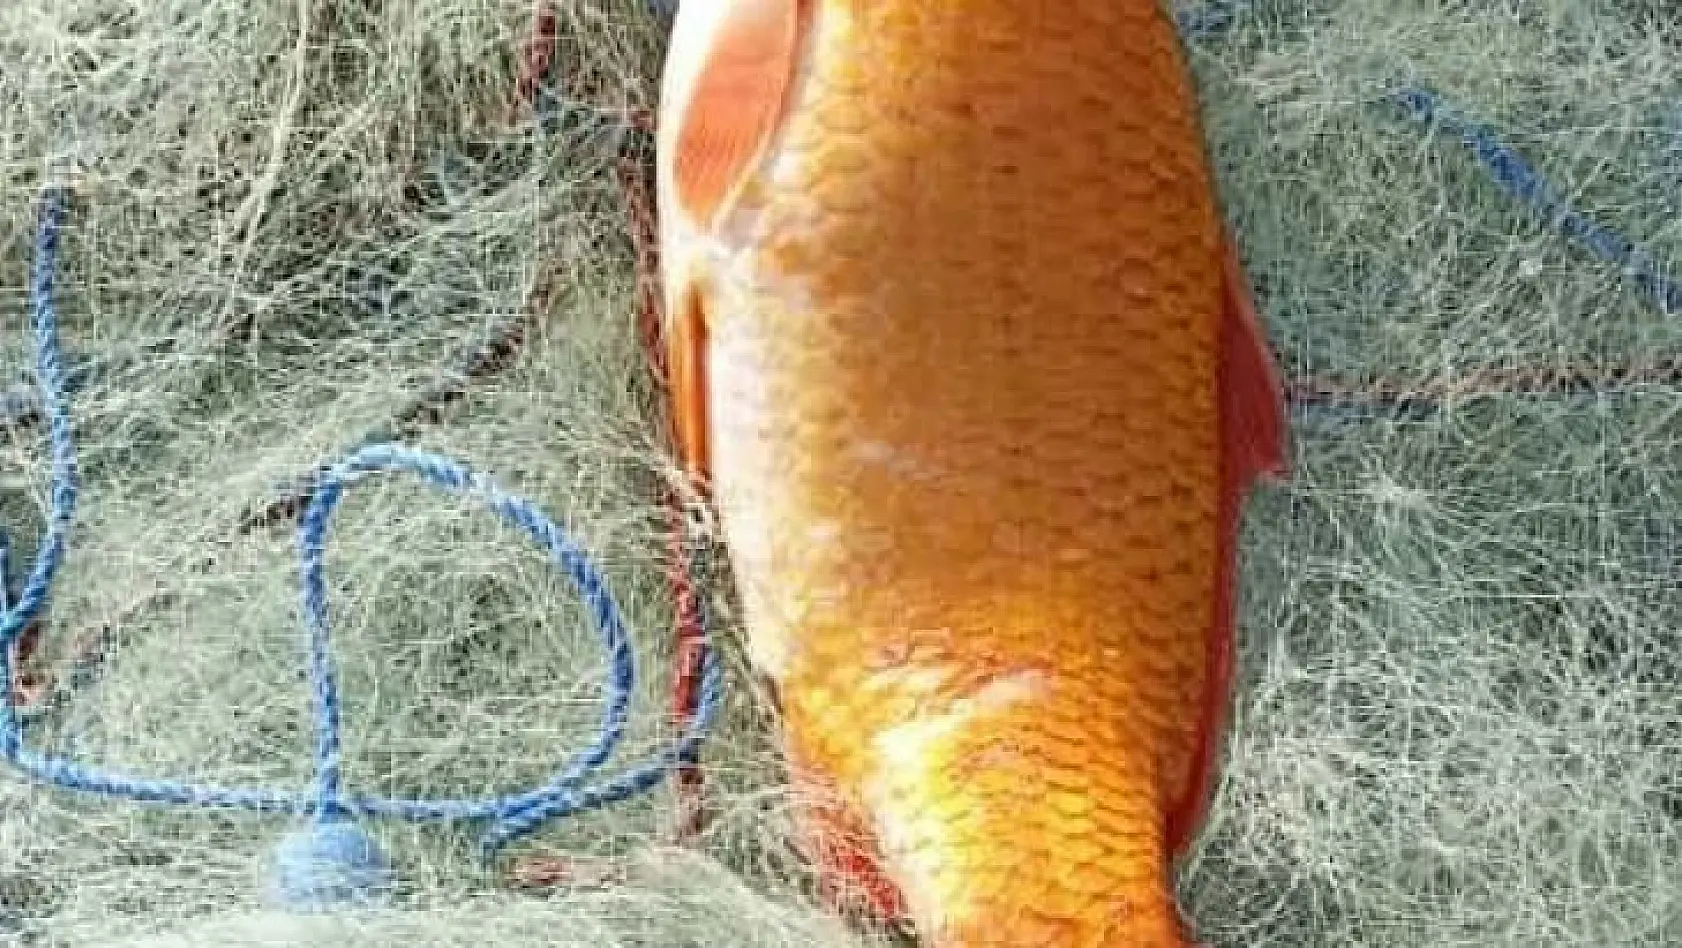 Keban Baraj Gölünde turuncu sazan ağlara takıldı